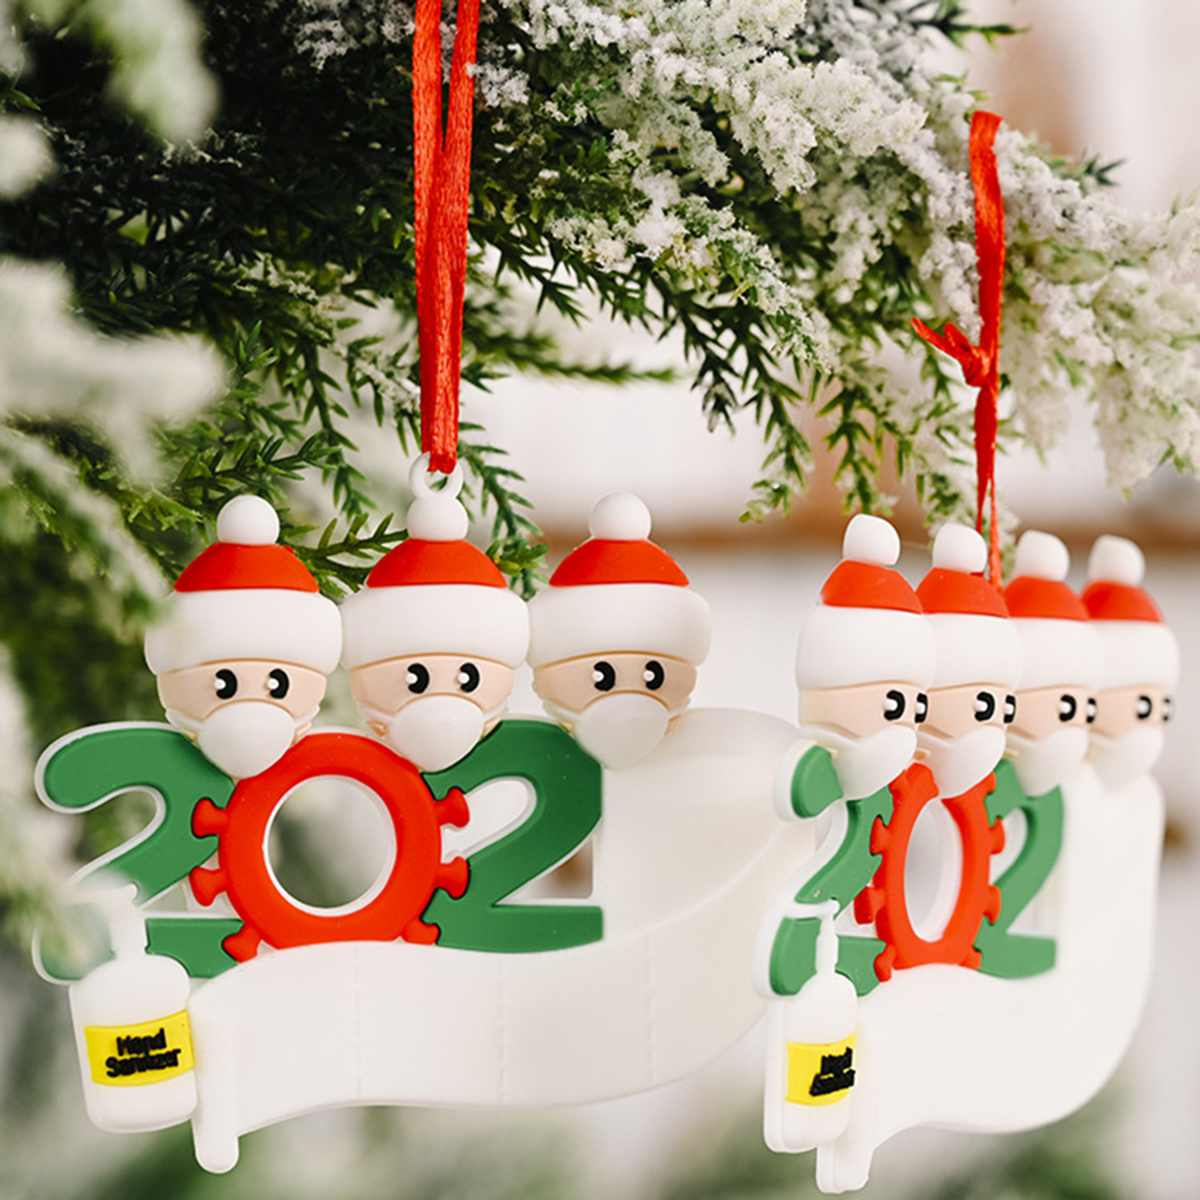 Mask-Santa-Snowman-Ornament-DIY-Name-Greetings-Christmas-Tree-Ornament-for-Christmas-Tree-Decoration-1786417-8